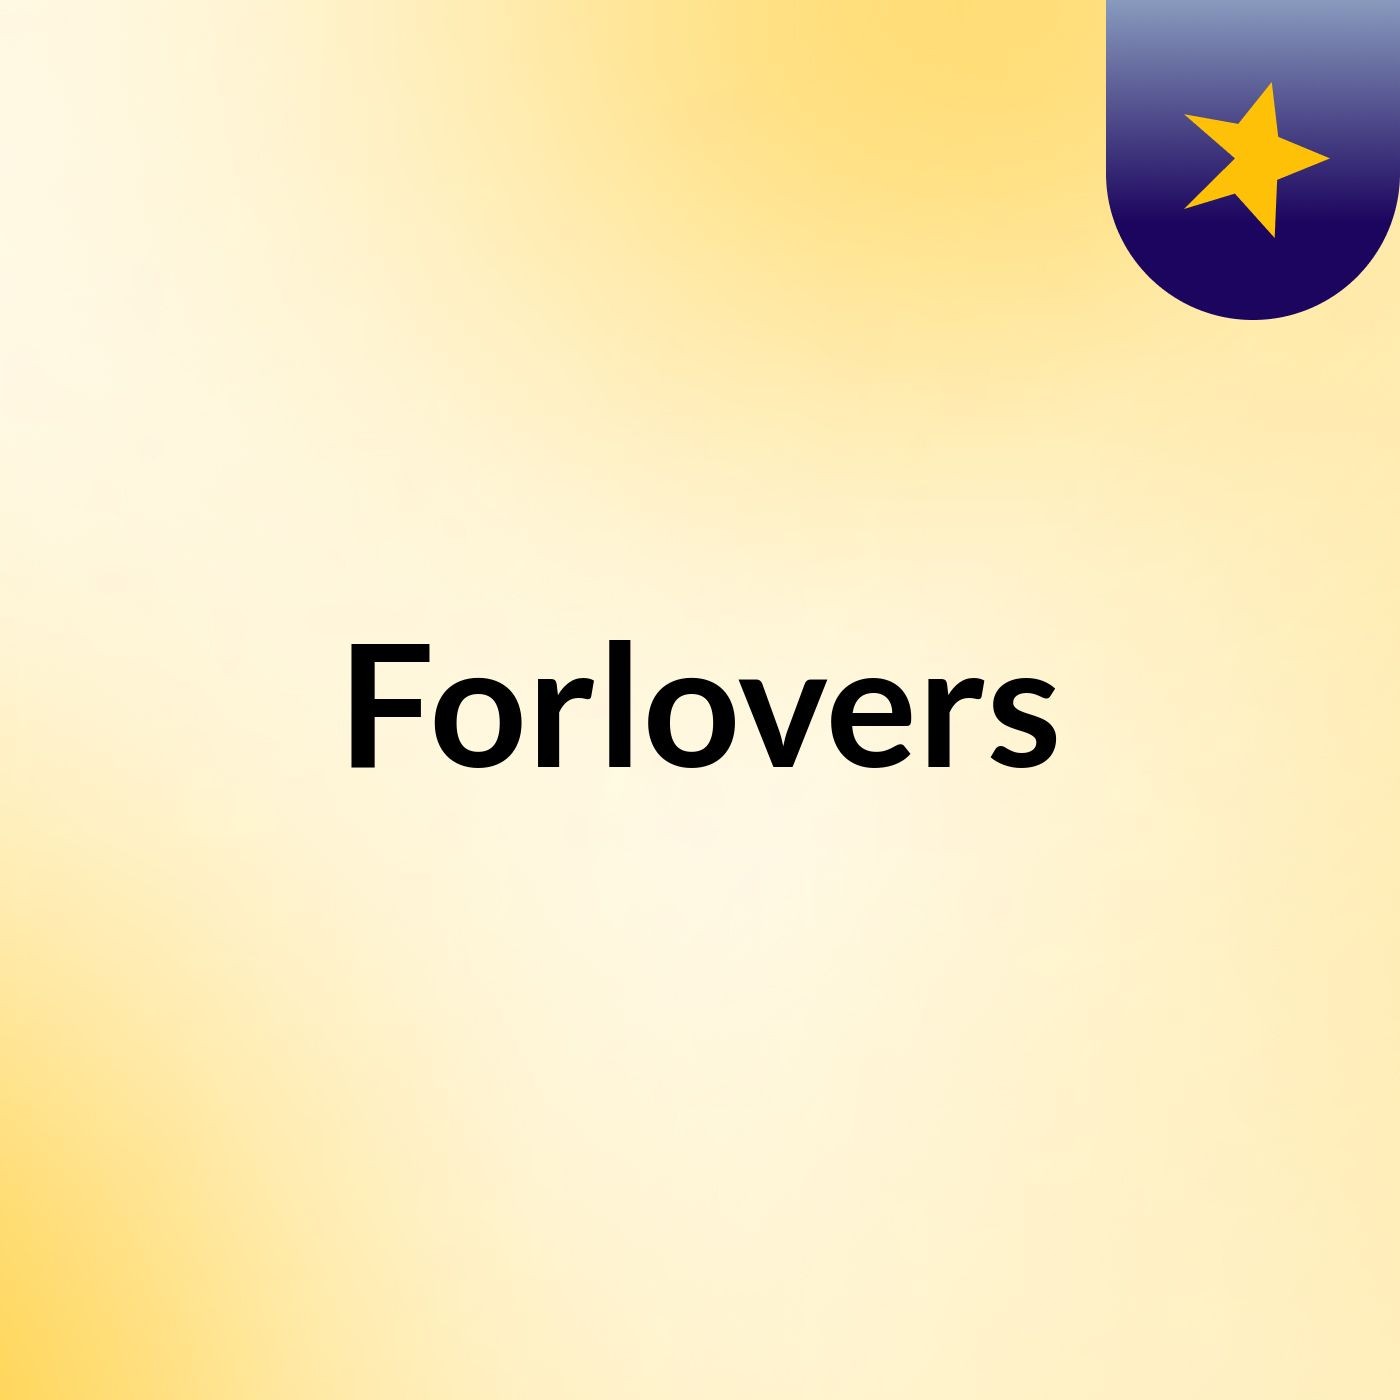 Episode 2 - Forlovers